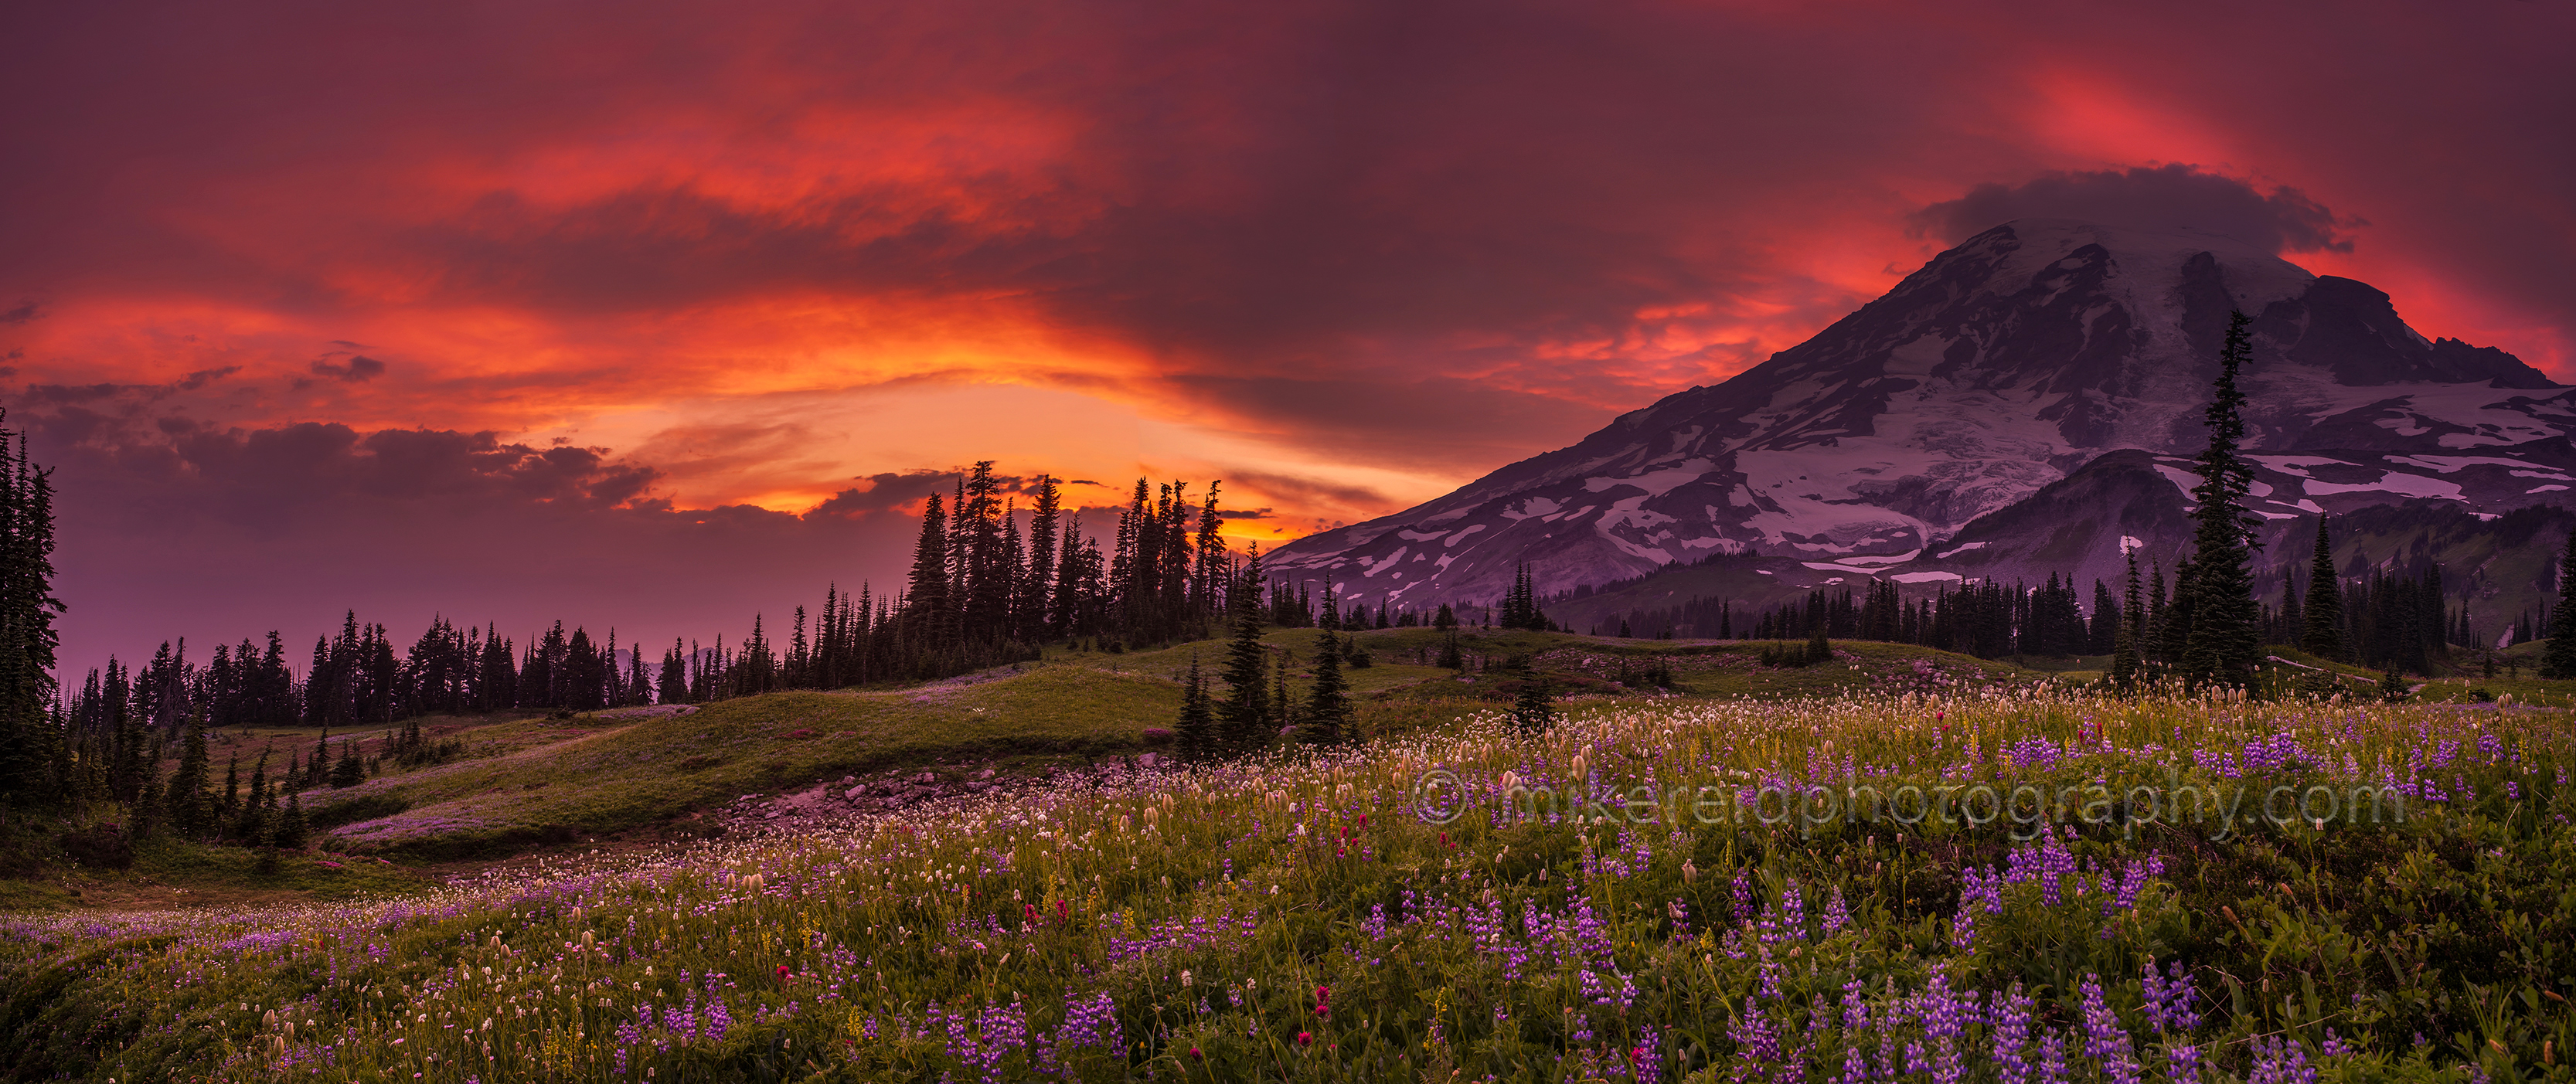 Mount Rainier Fiery Mountain Sunset Pano